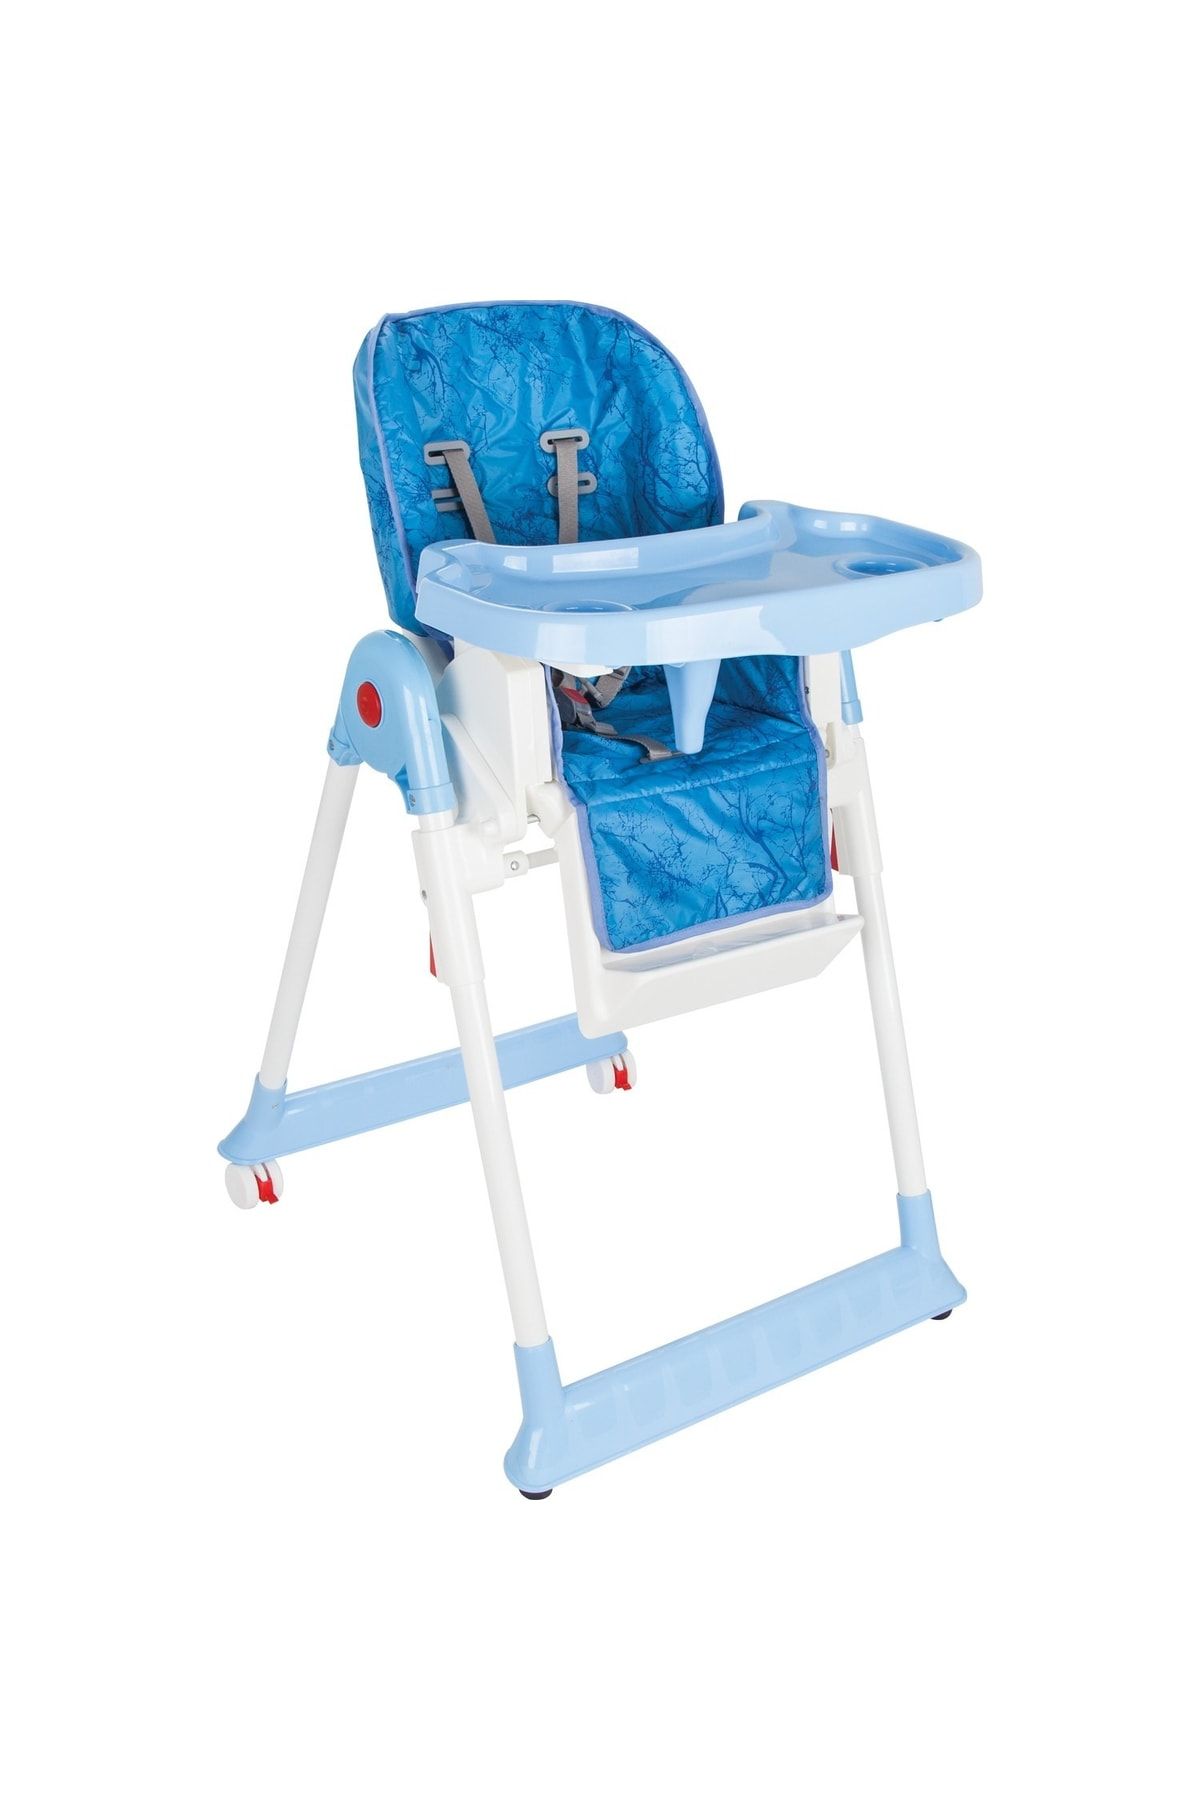 PİLSAN Süper Mama Sandalyesi - Yükseklik Ayarlı, Kademeli, Ön Tepsili Mavi